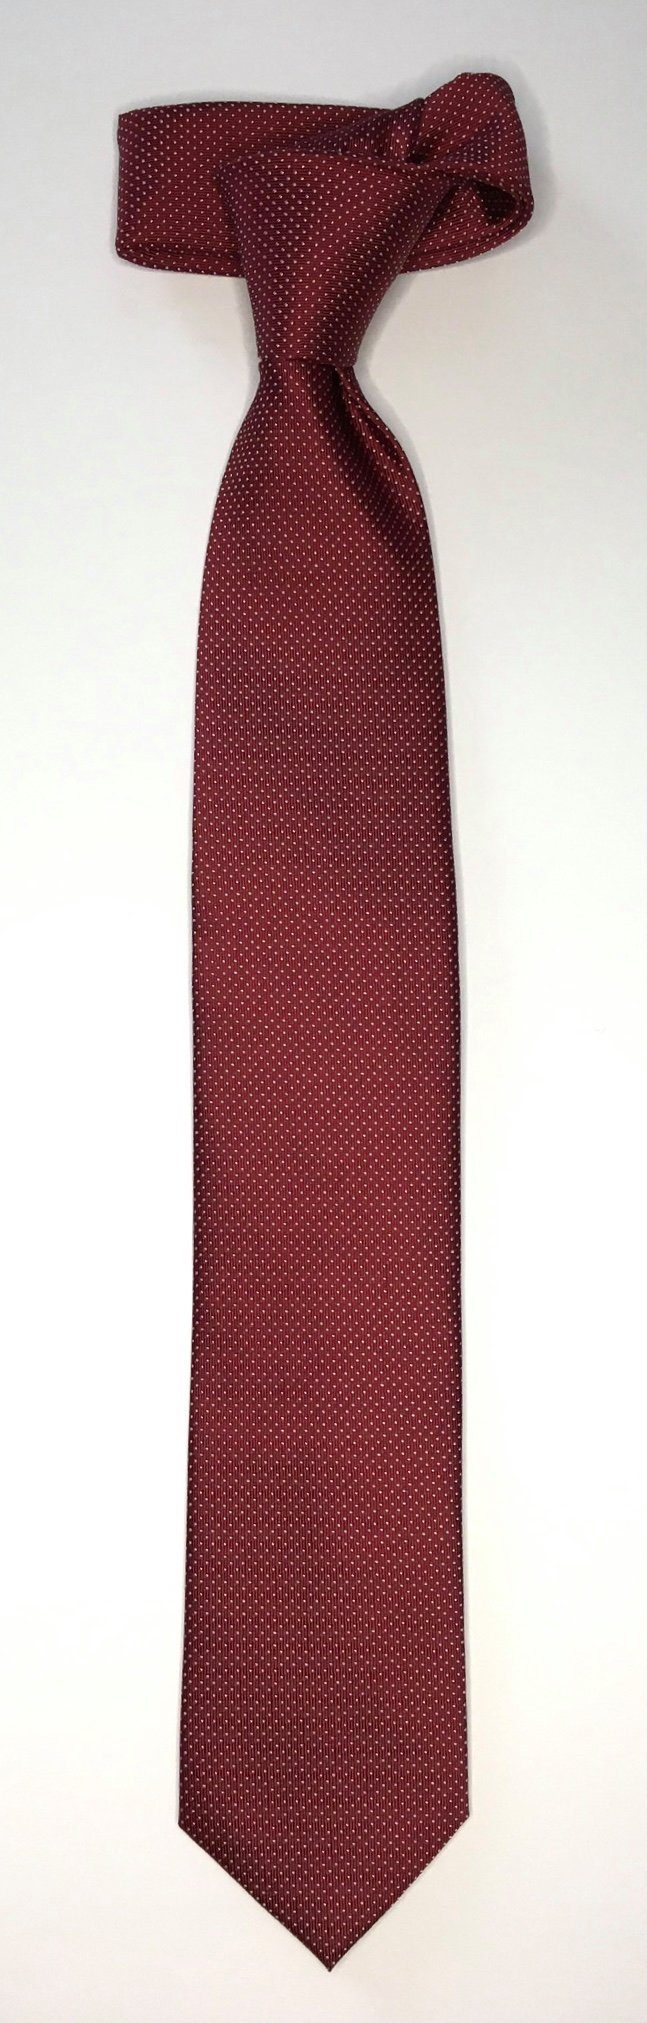 Krawatte Seidenfalter Design Krawatte Krawatte 6cm Picoté Seidenfalter edlen im Picoté Seidenfalter Bordeaux